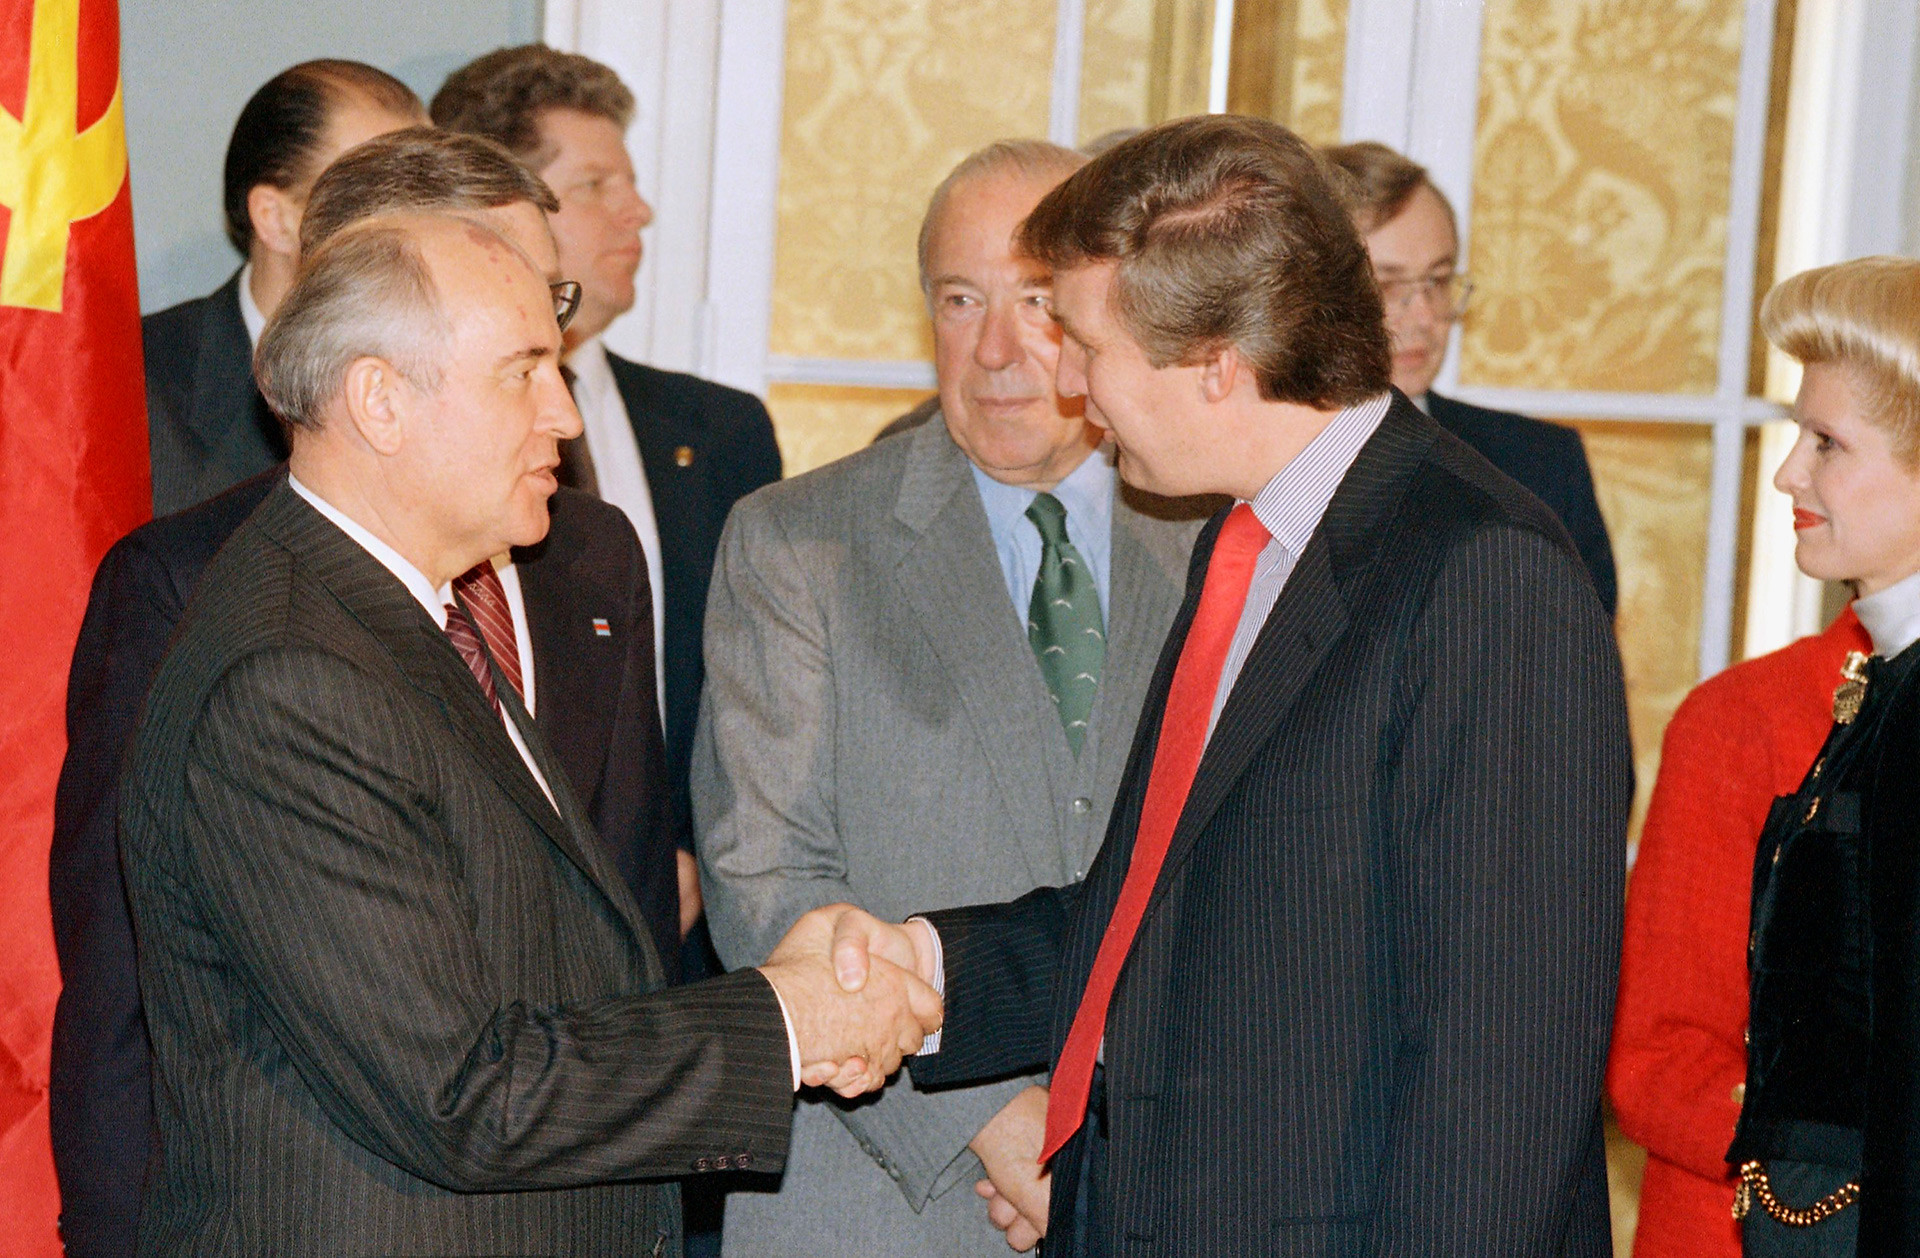 Sovjetski voditelj Mihail Gorbačov se rokuje z newyorškim investitorjem Donaldom Trumpom.
